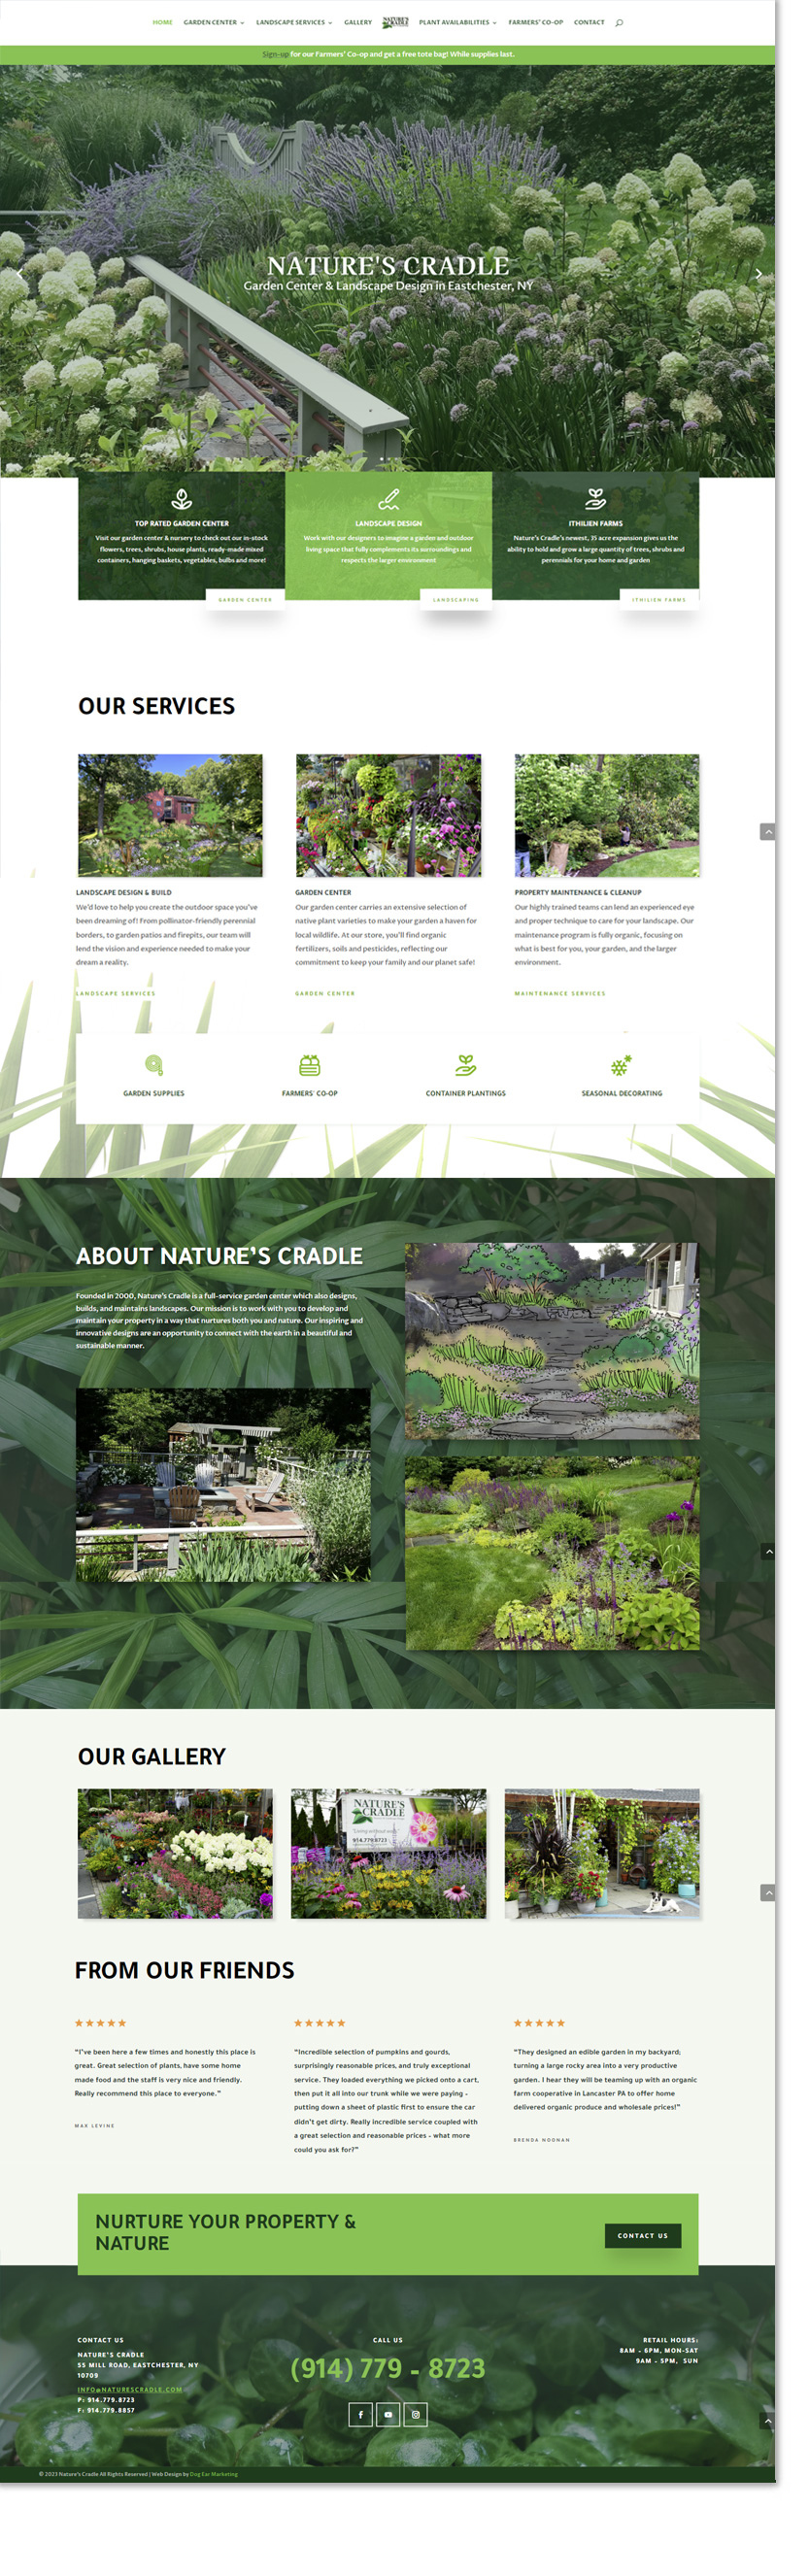 nature's cradle wordpress website design